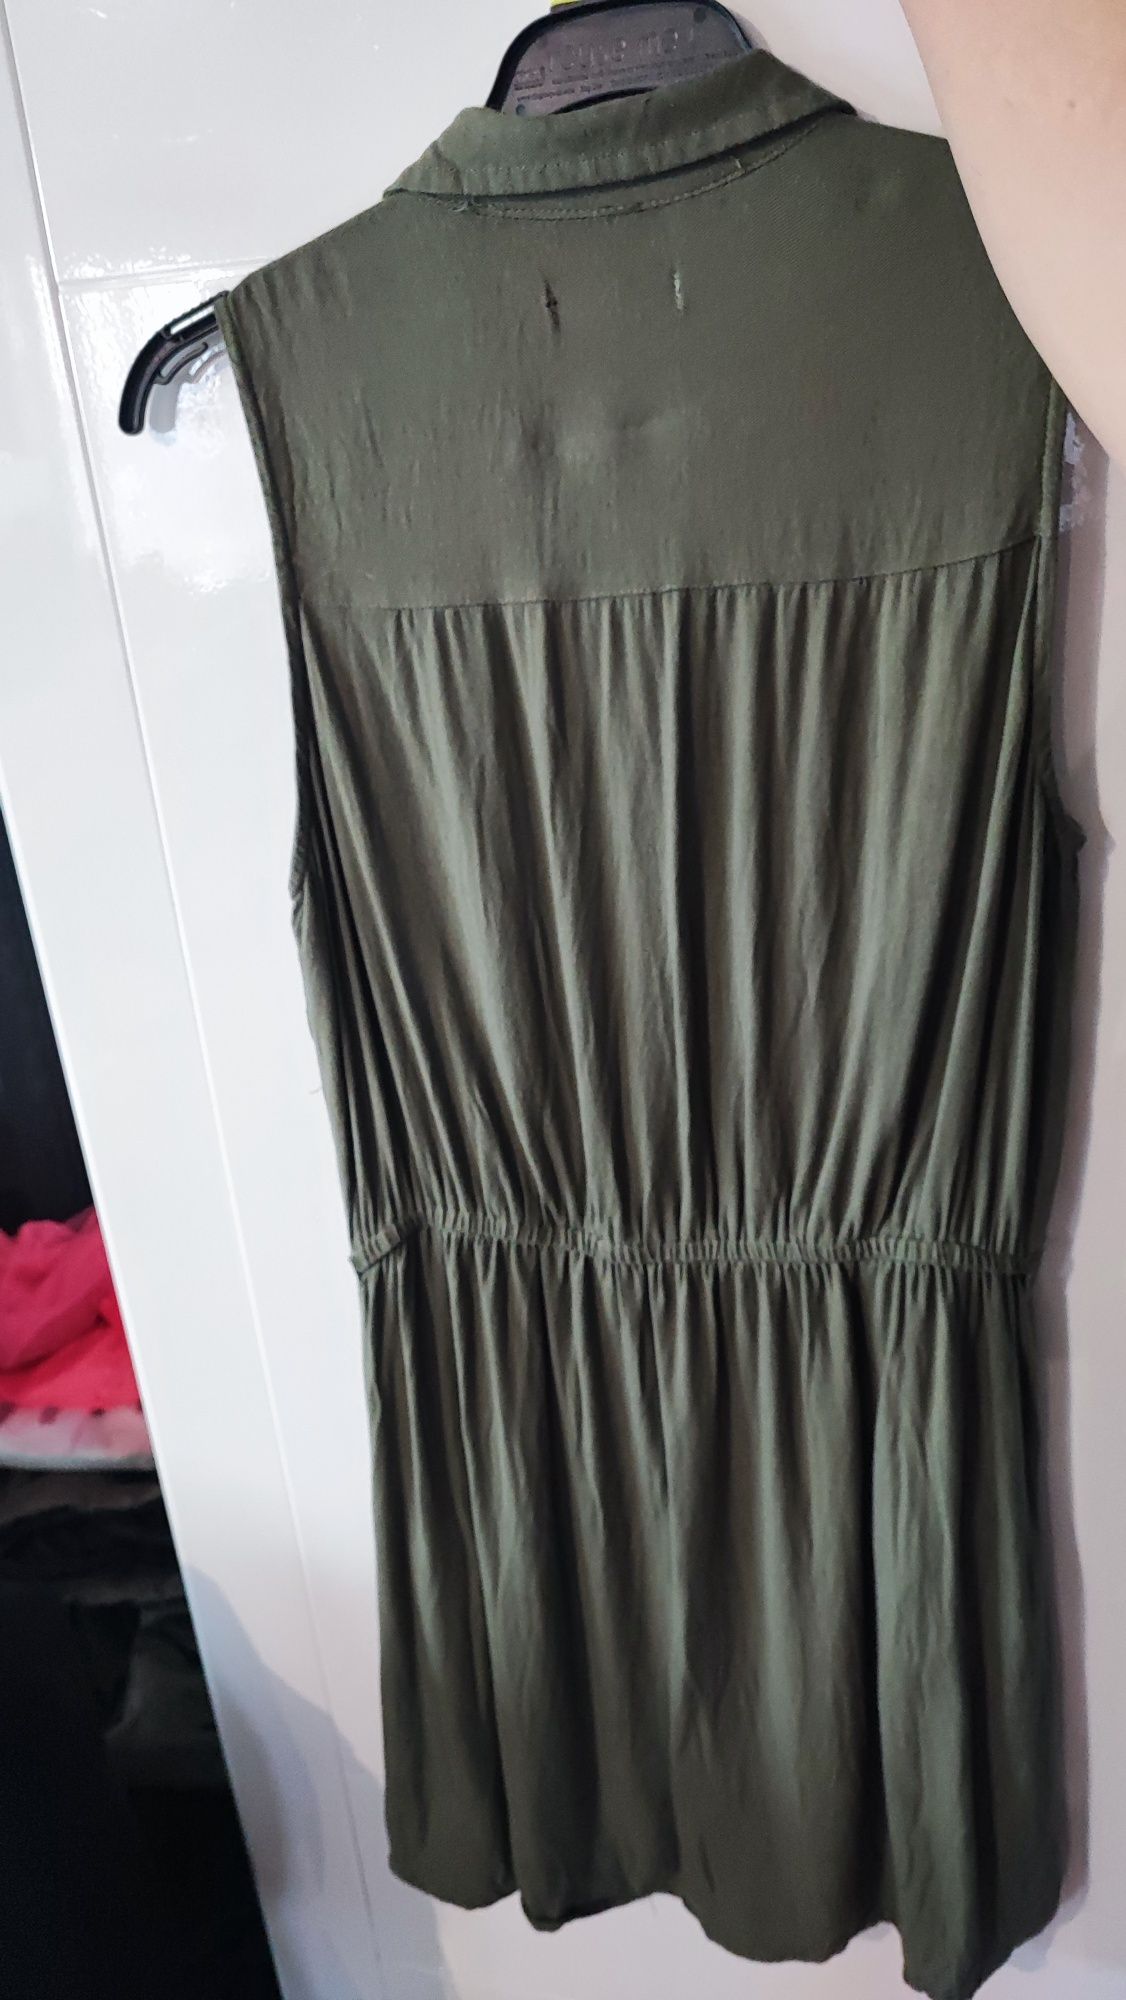 Sukienka Sinsay, rozmiar S, cena 15zł, długość 77cm, paszki 48cm, pas